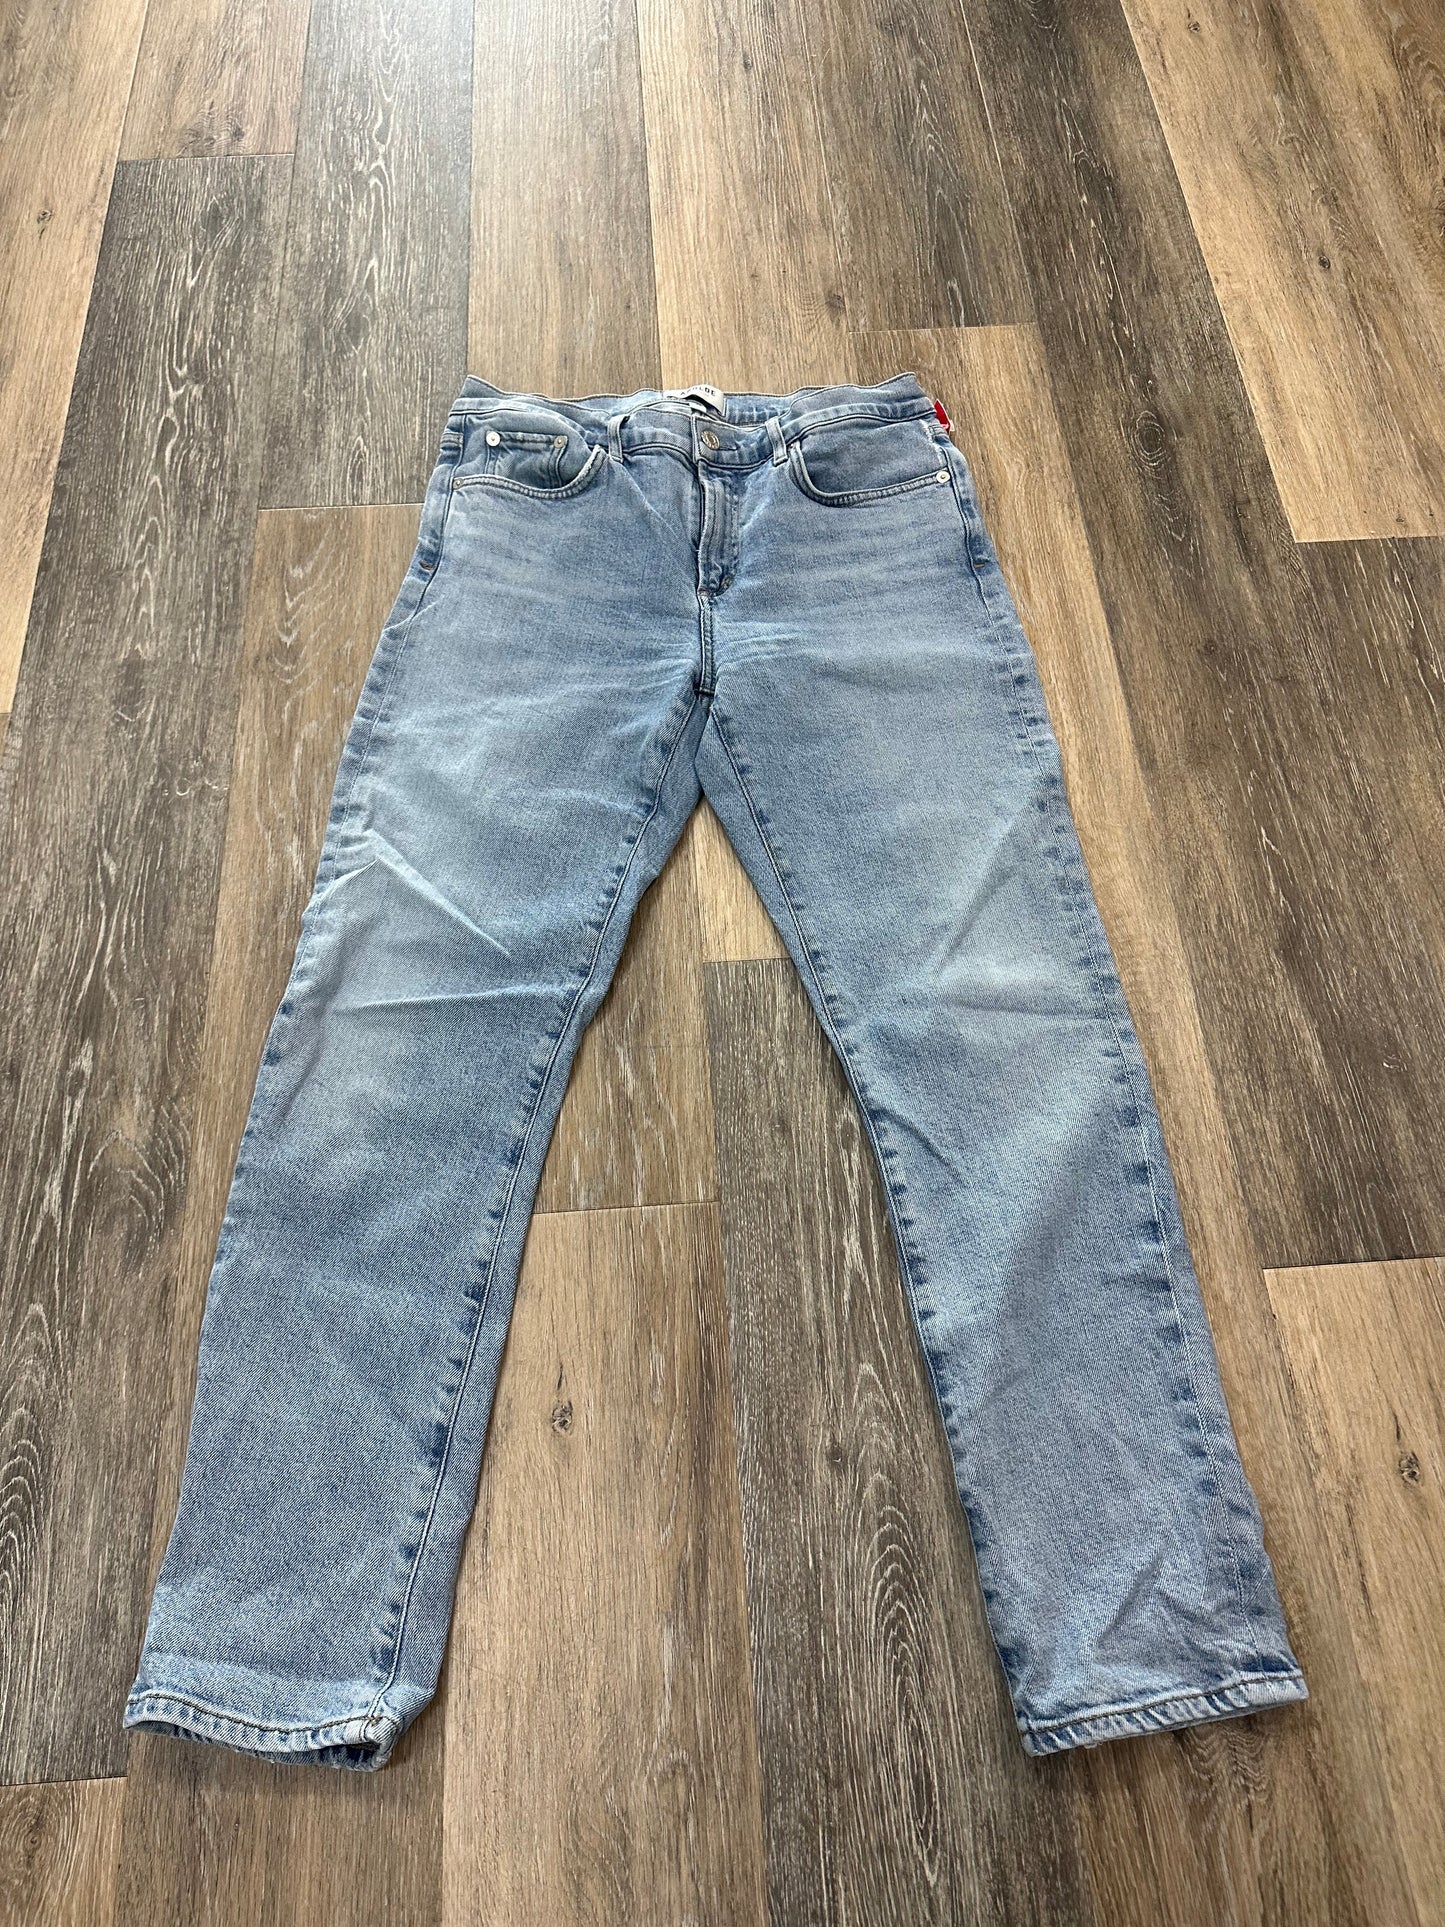 Blue Denim Jeans Designer Agolde, Size 8